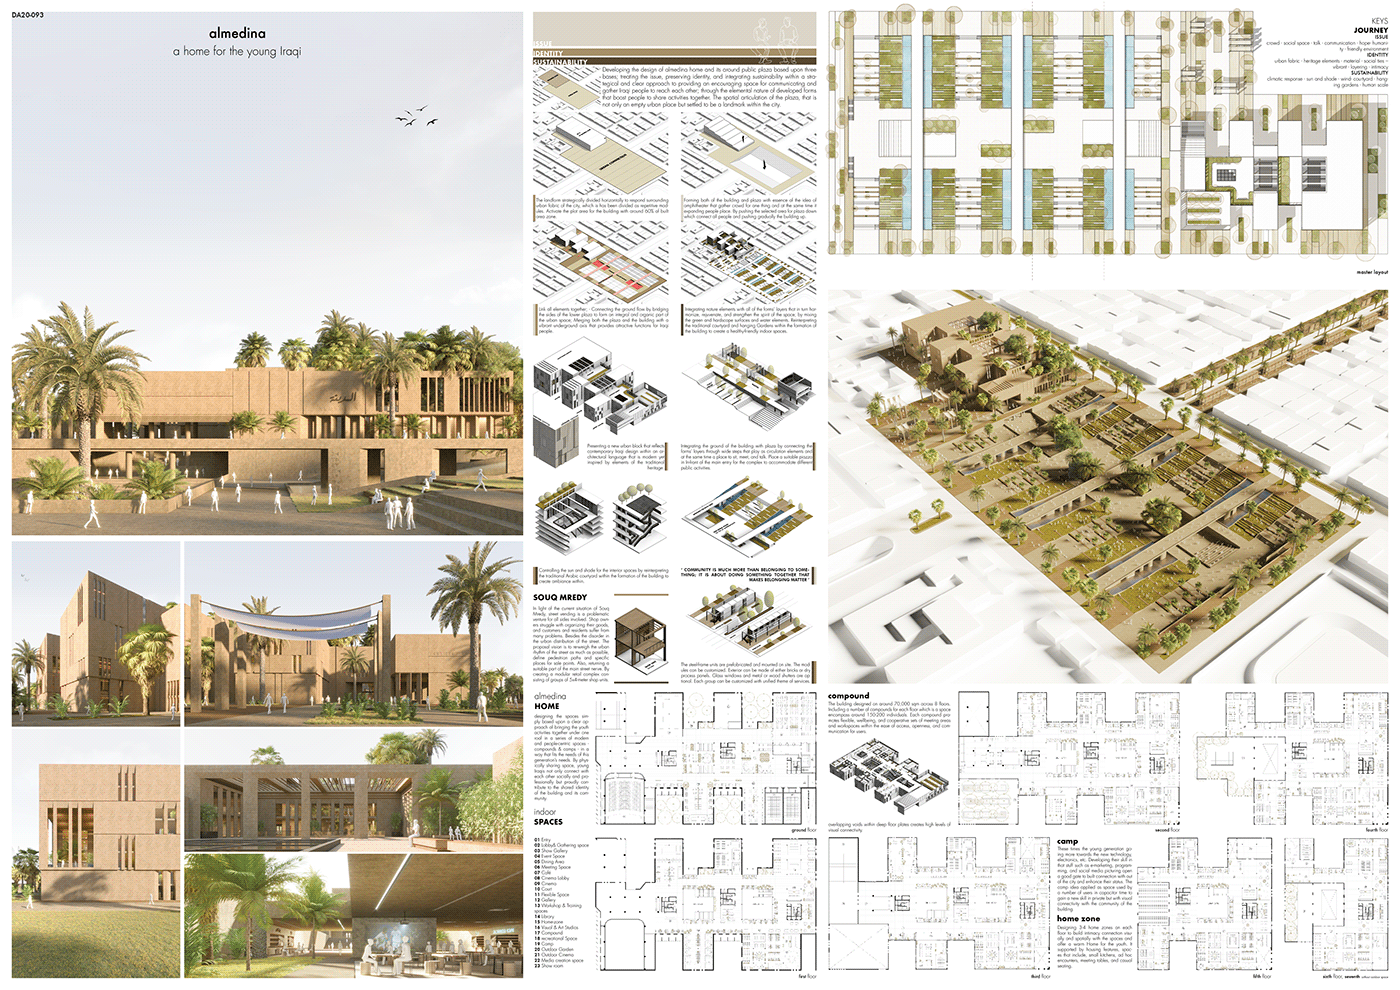 architecture cpmpetition dewan iraq Landscape natural Urban